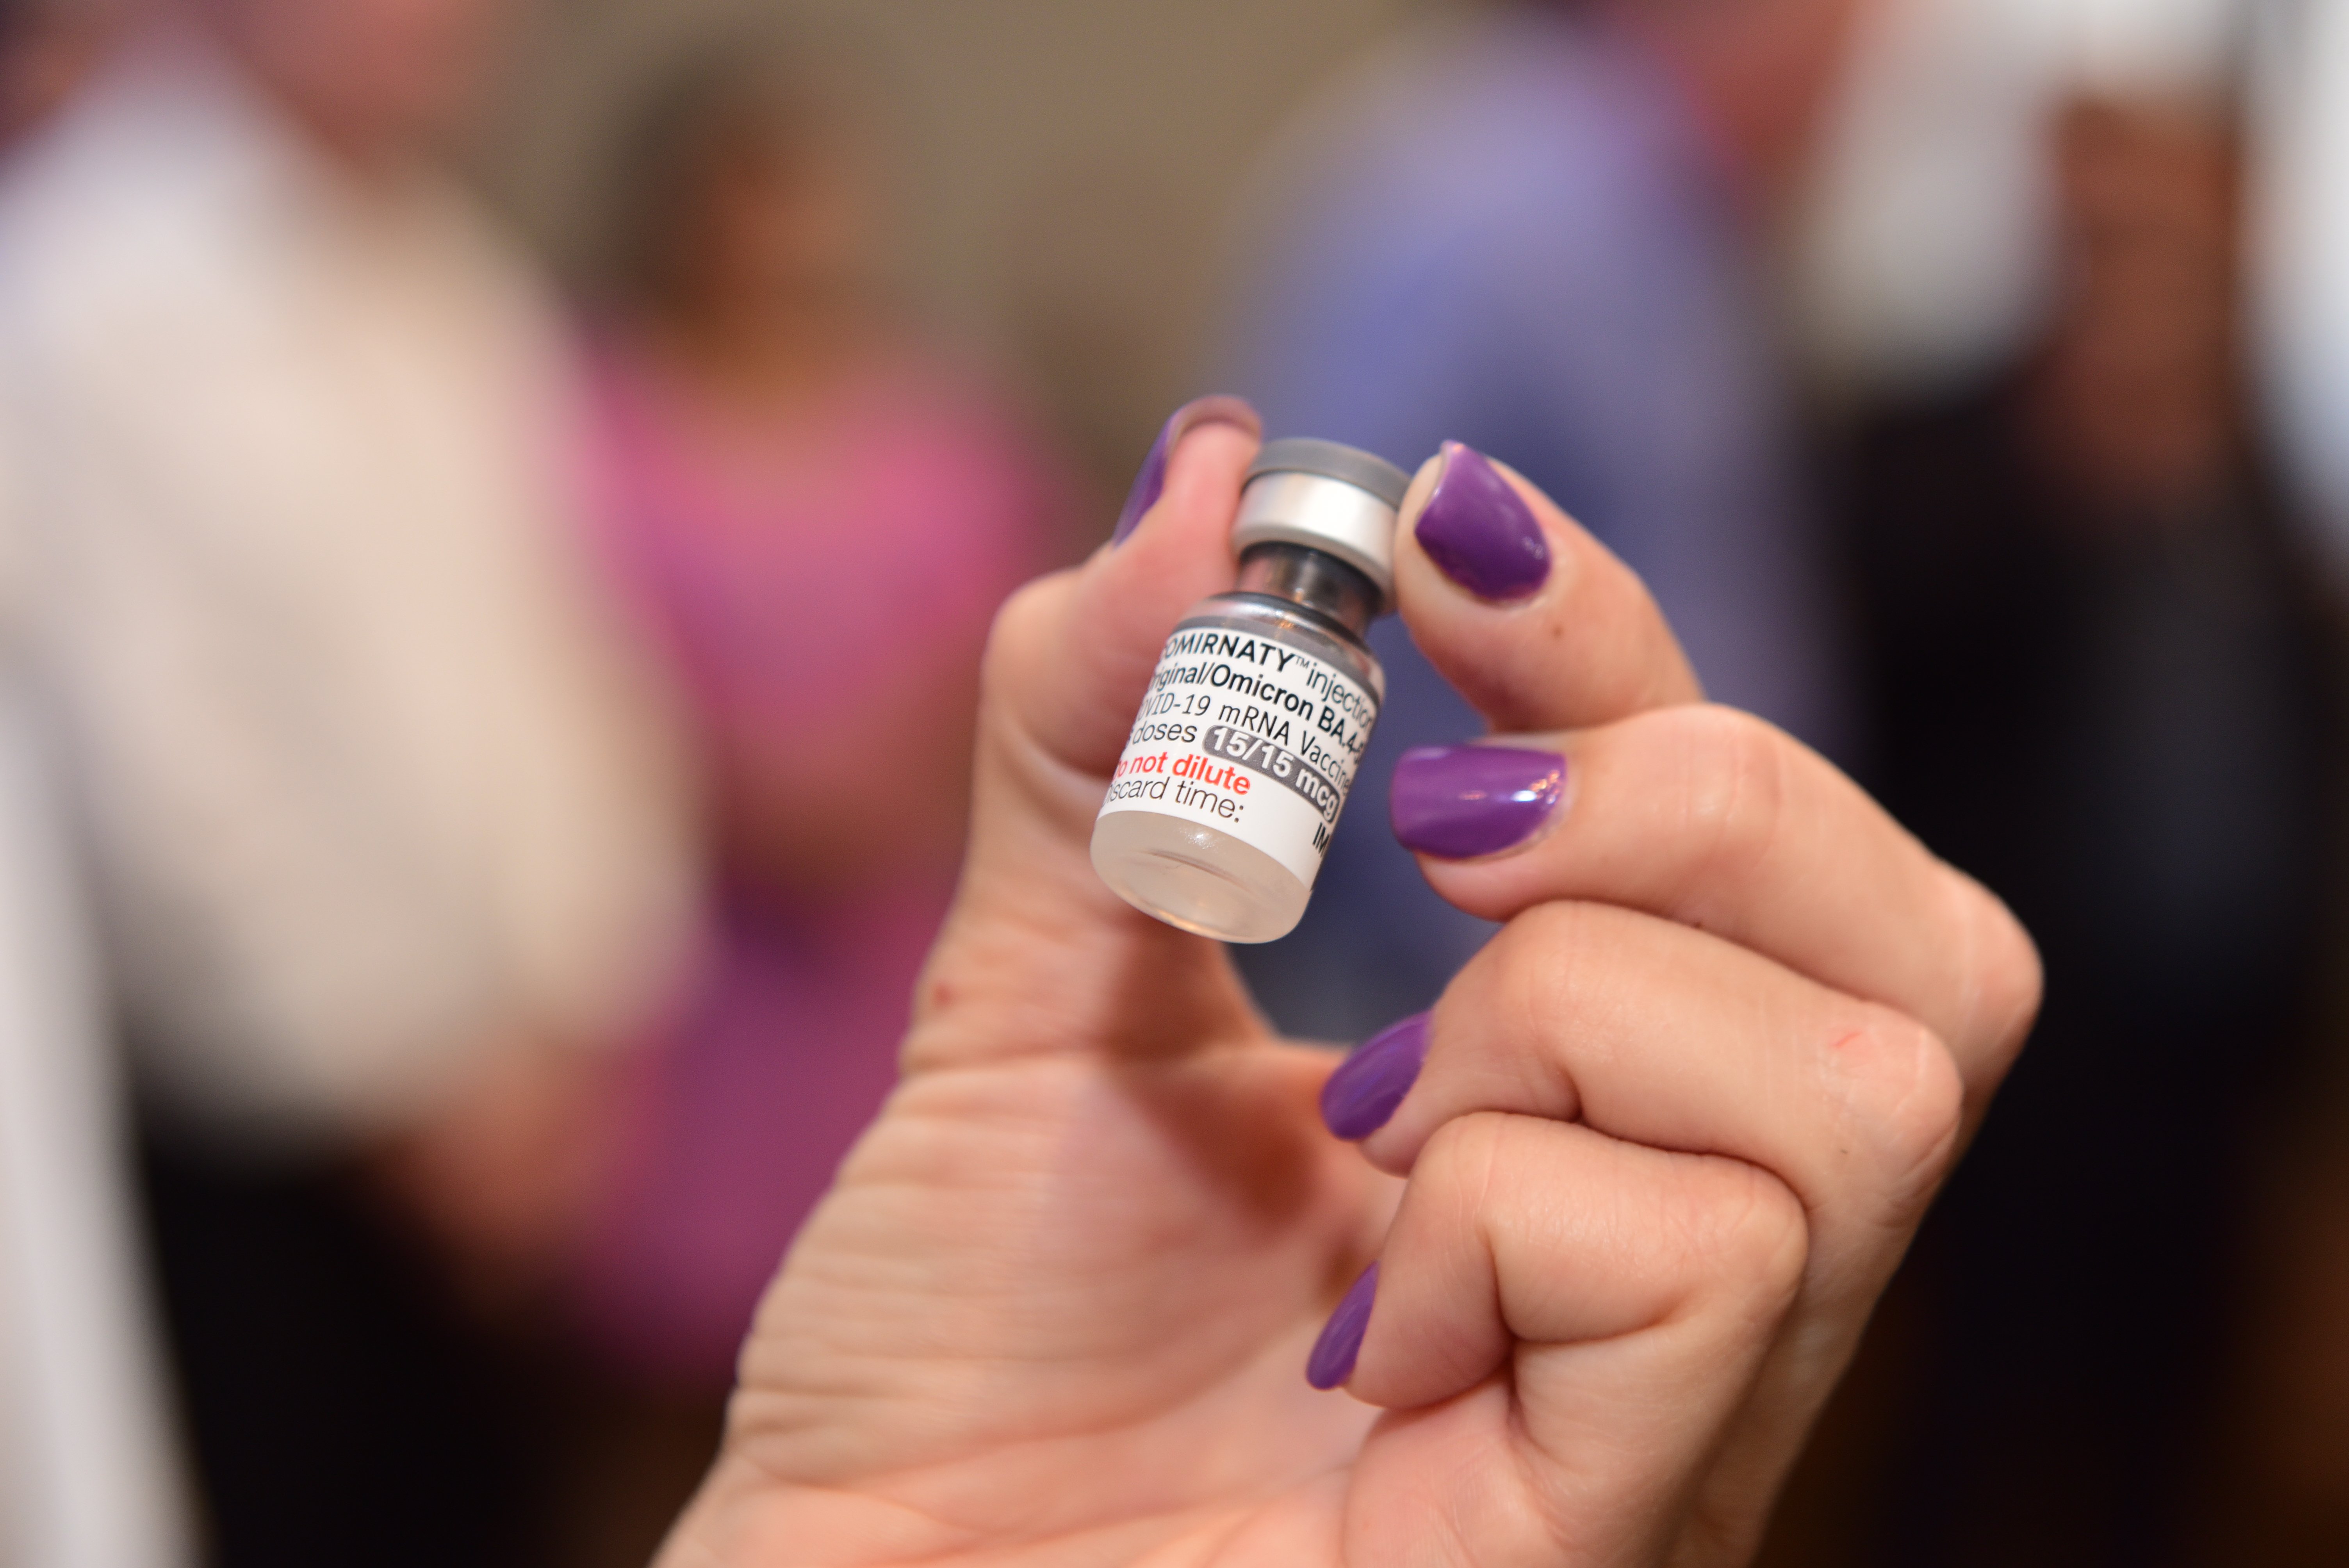 O Ministério da Saúde confirmou a compra de 12,5 milhões de doses de vacina contra a covid-19 da farmacêutica Moderna